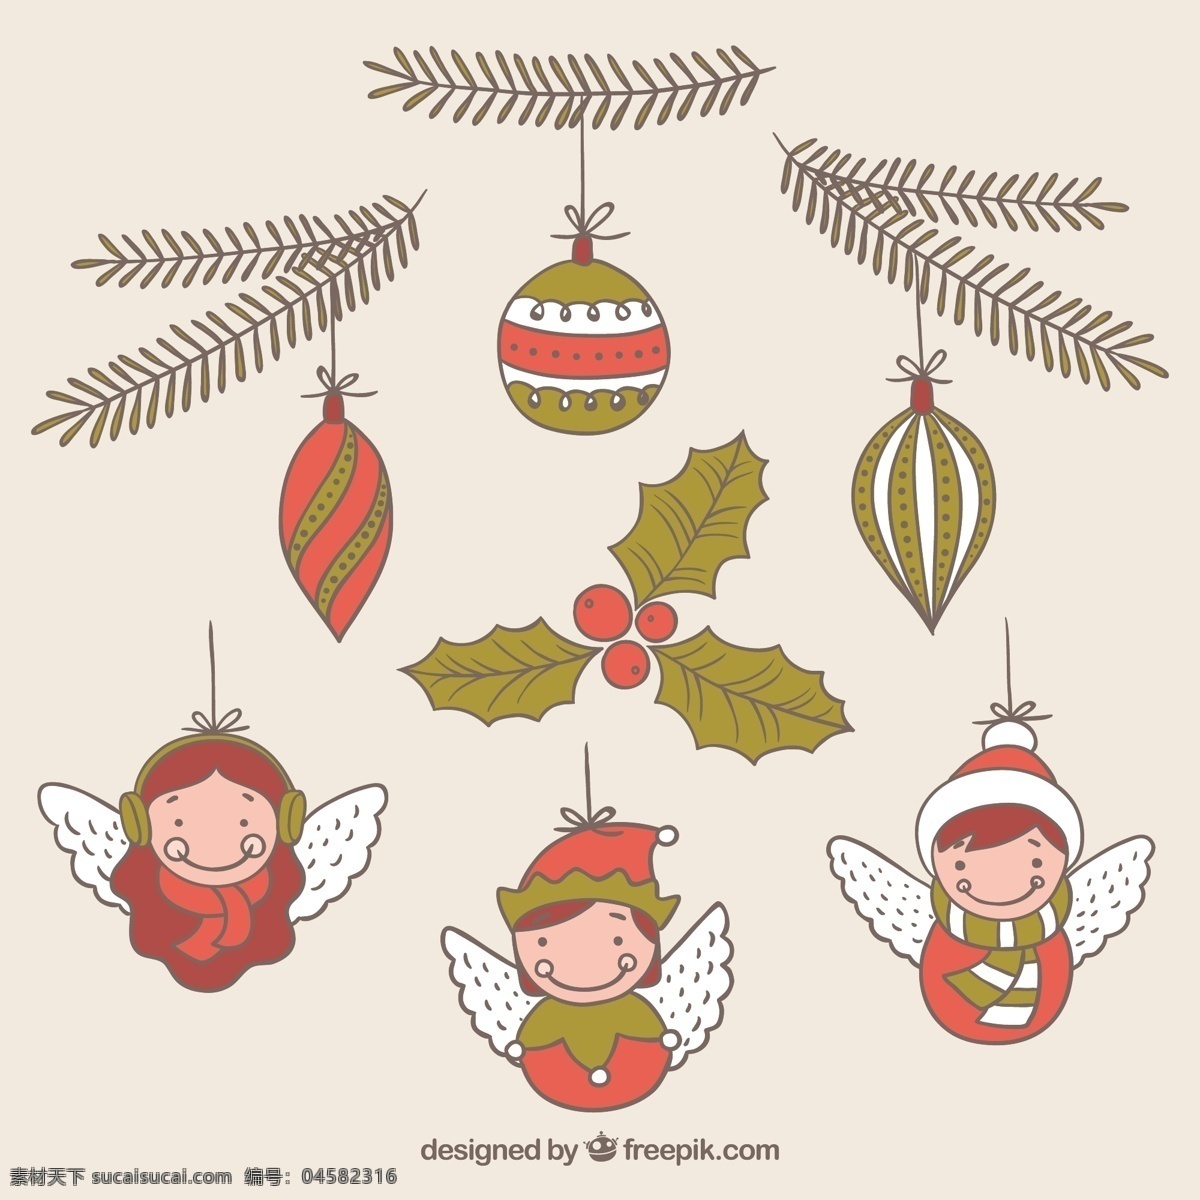 绘制 圣诞球 收藏 圣诞节 圣诞快乐 冬天 庆典 节日 球 节日快乐 插图 槲寄生 天使 拉球 季节 快乐 白色